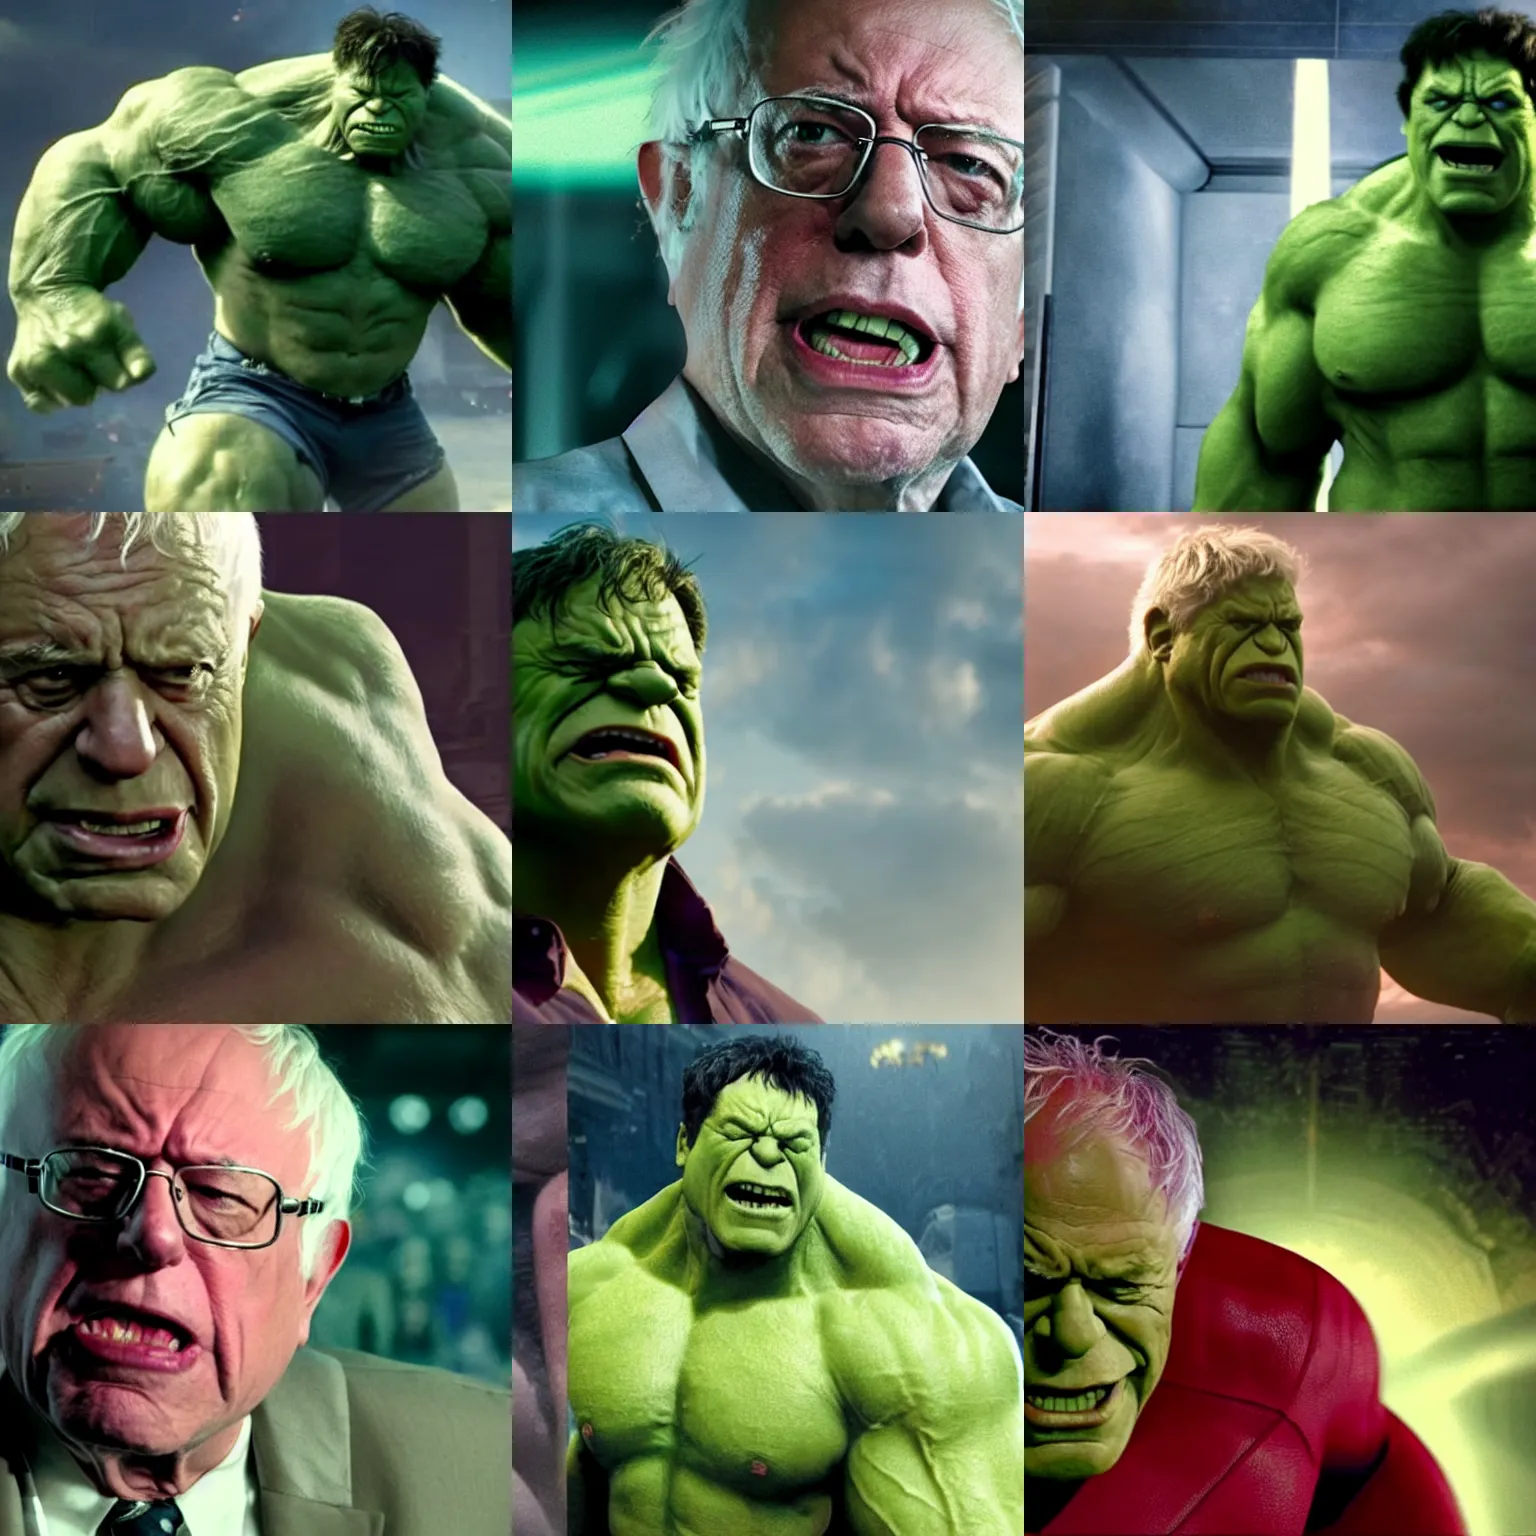 Prompt: film still of bernie sanders as hulk in infinity war movie, 8 k